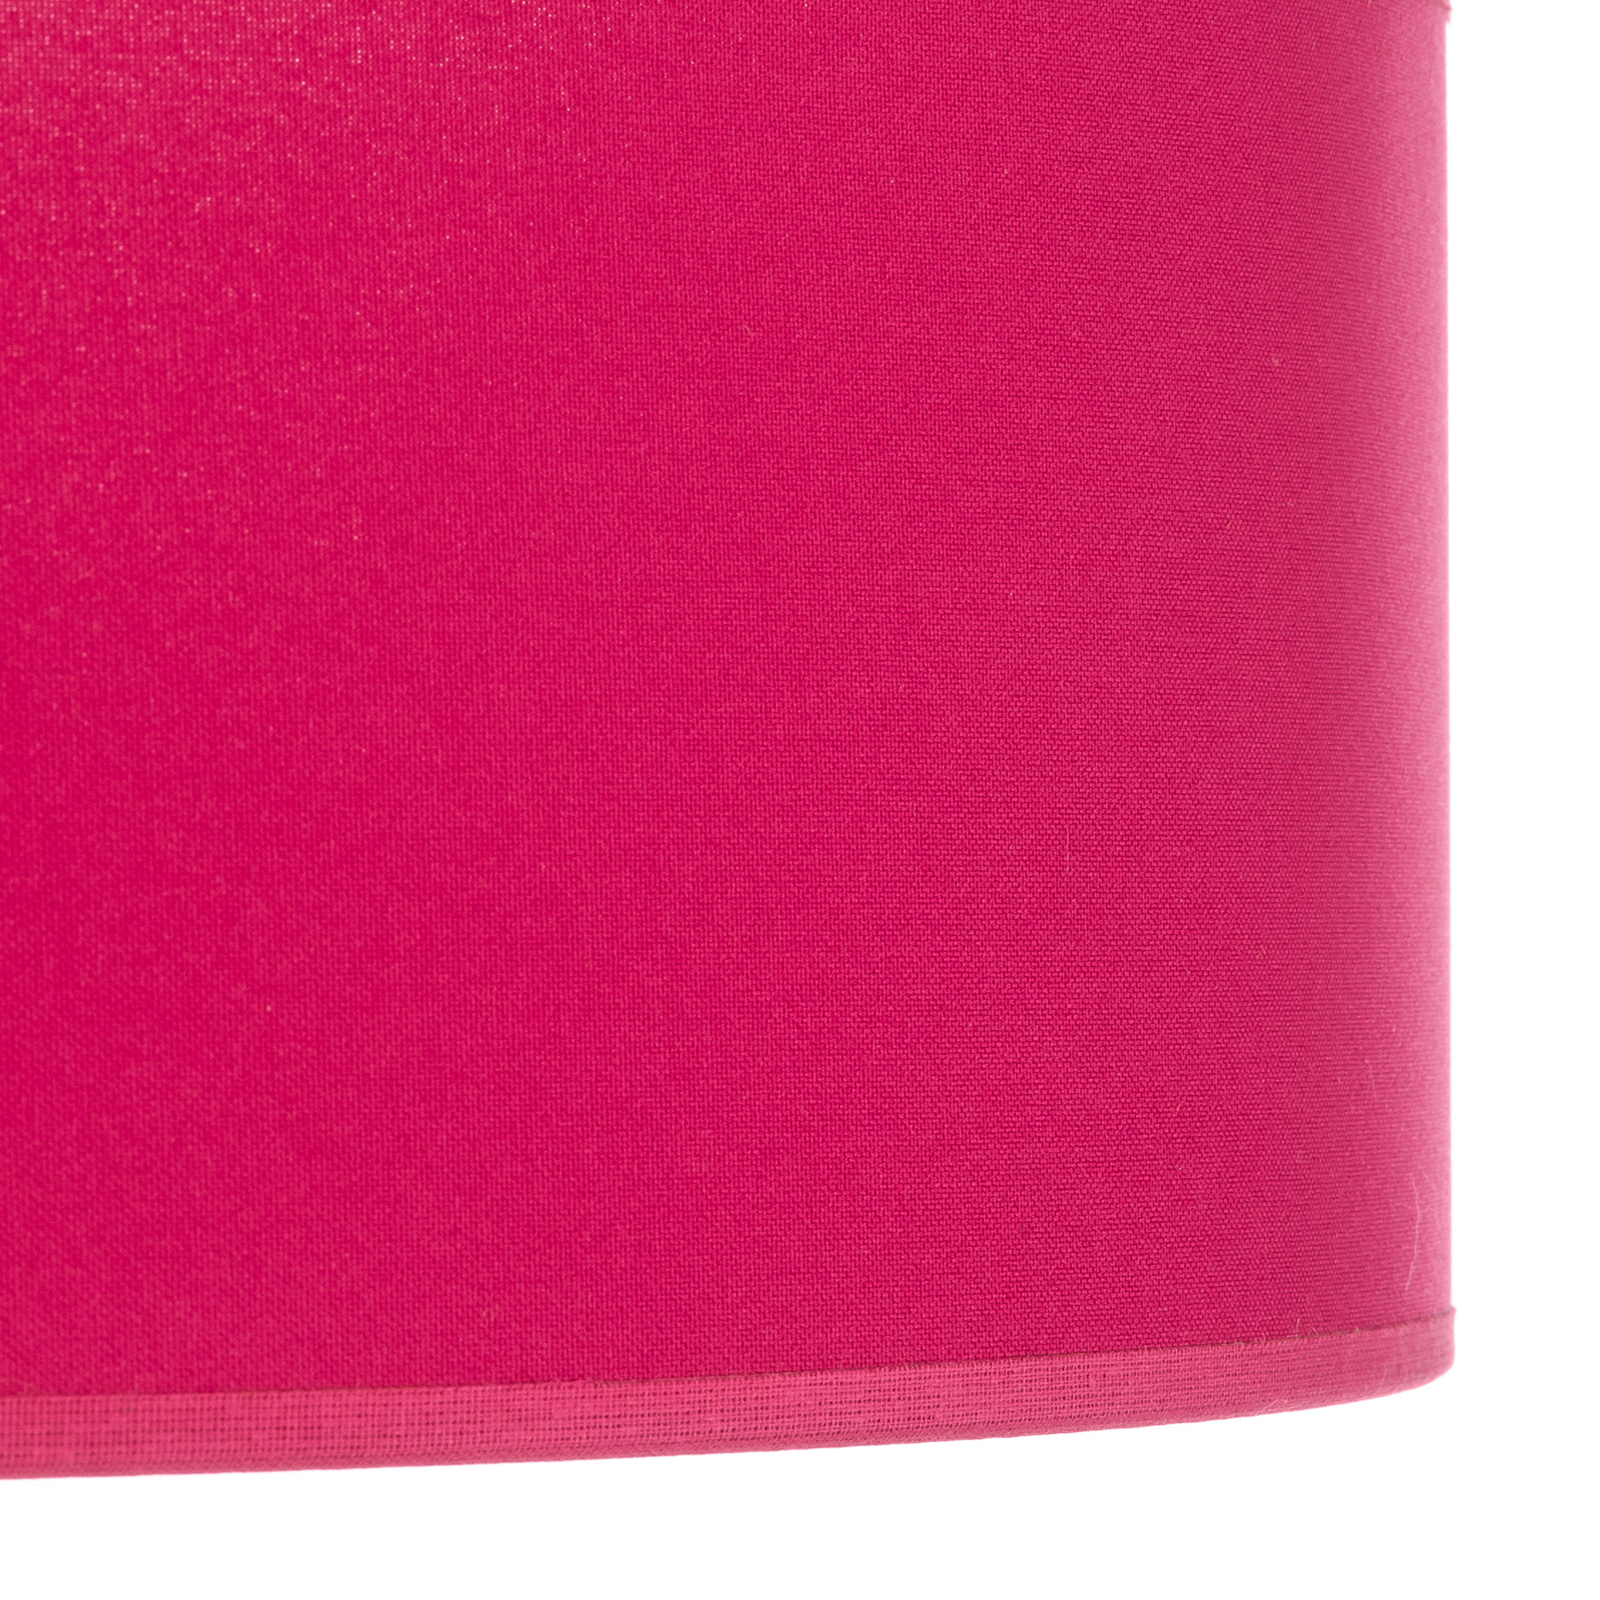 Euluna Roller couverture, abat-jour en tissu rose, Ø 50 cm